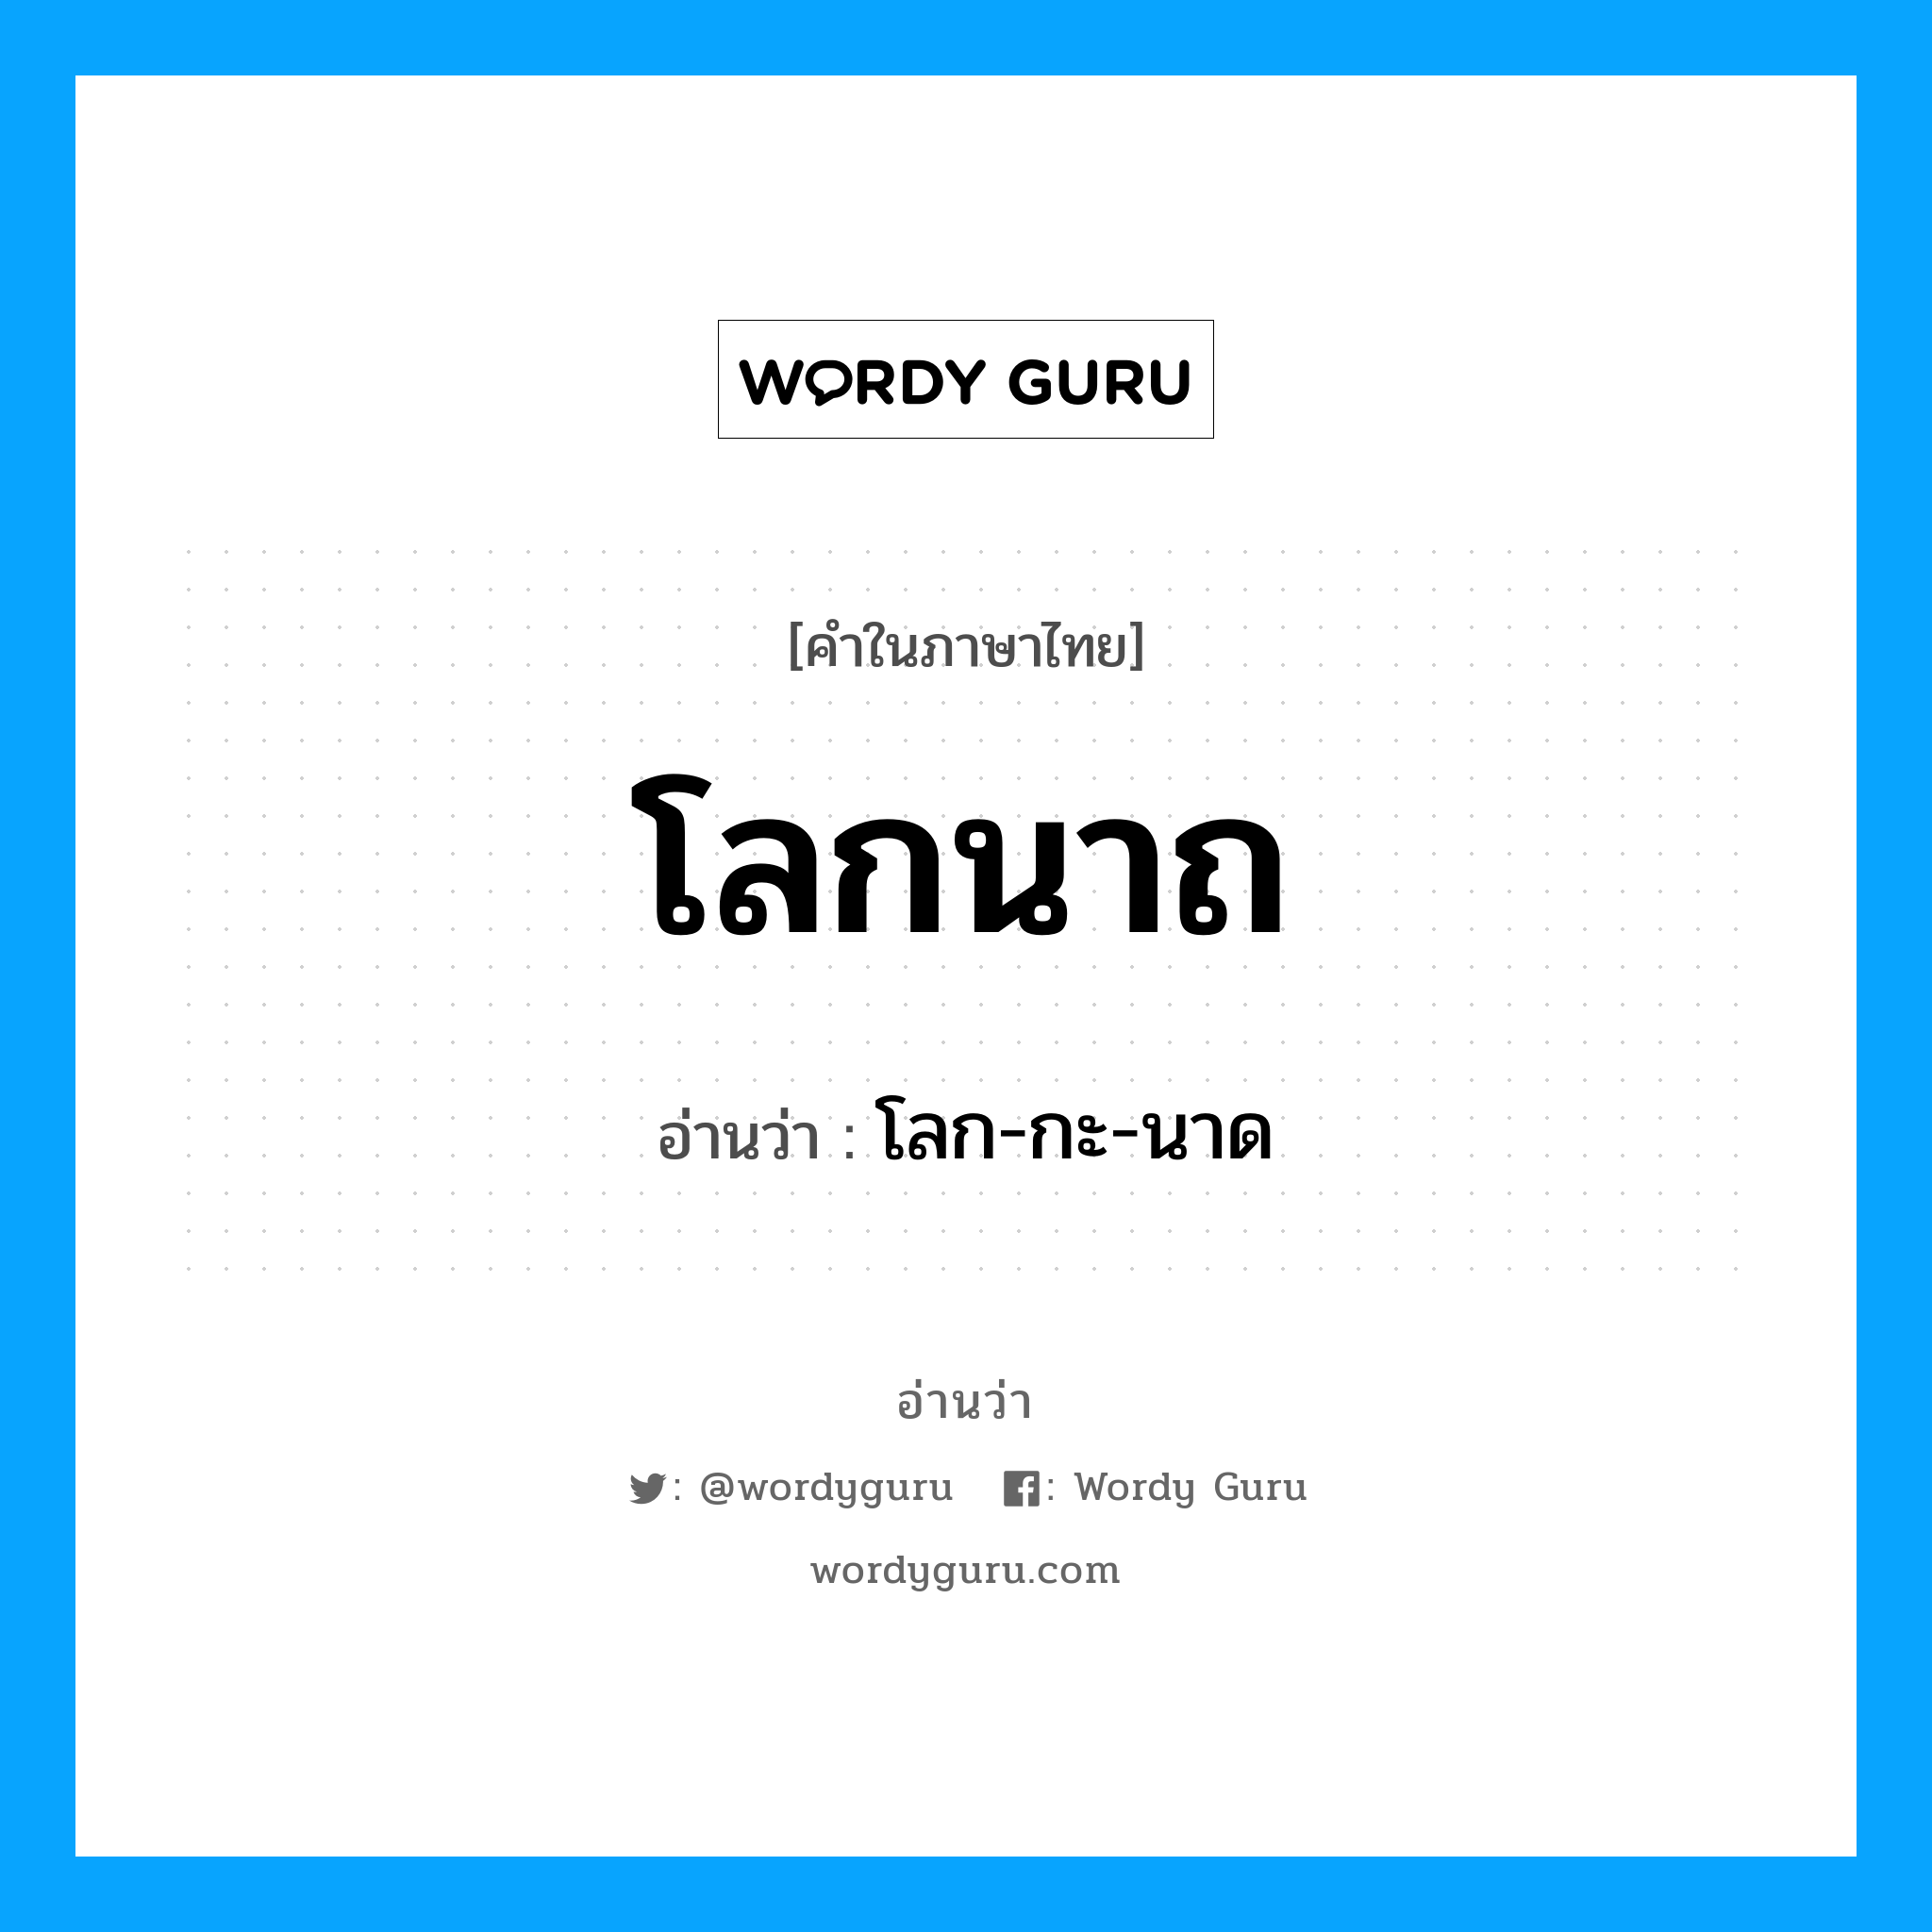 โลก-กะ-นาด เป็นคำอ่านของคำไหน?, คำในภาษาไทย โลก-กะ-นาด อ่านว่า โลกนาถ